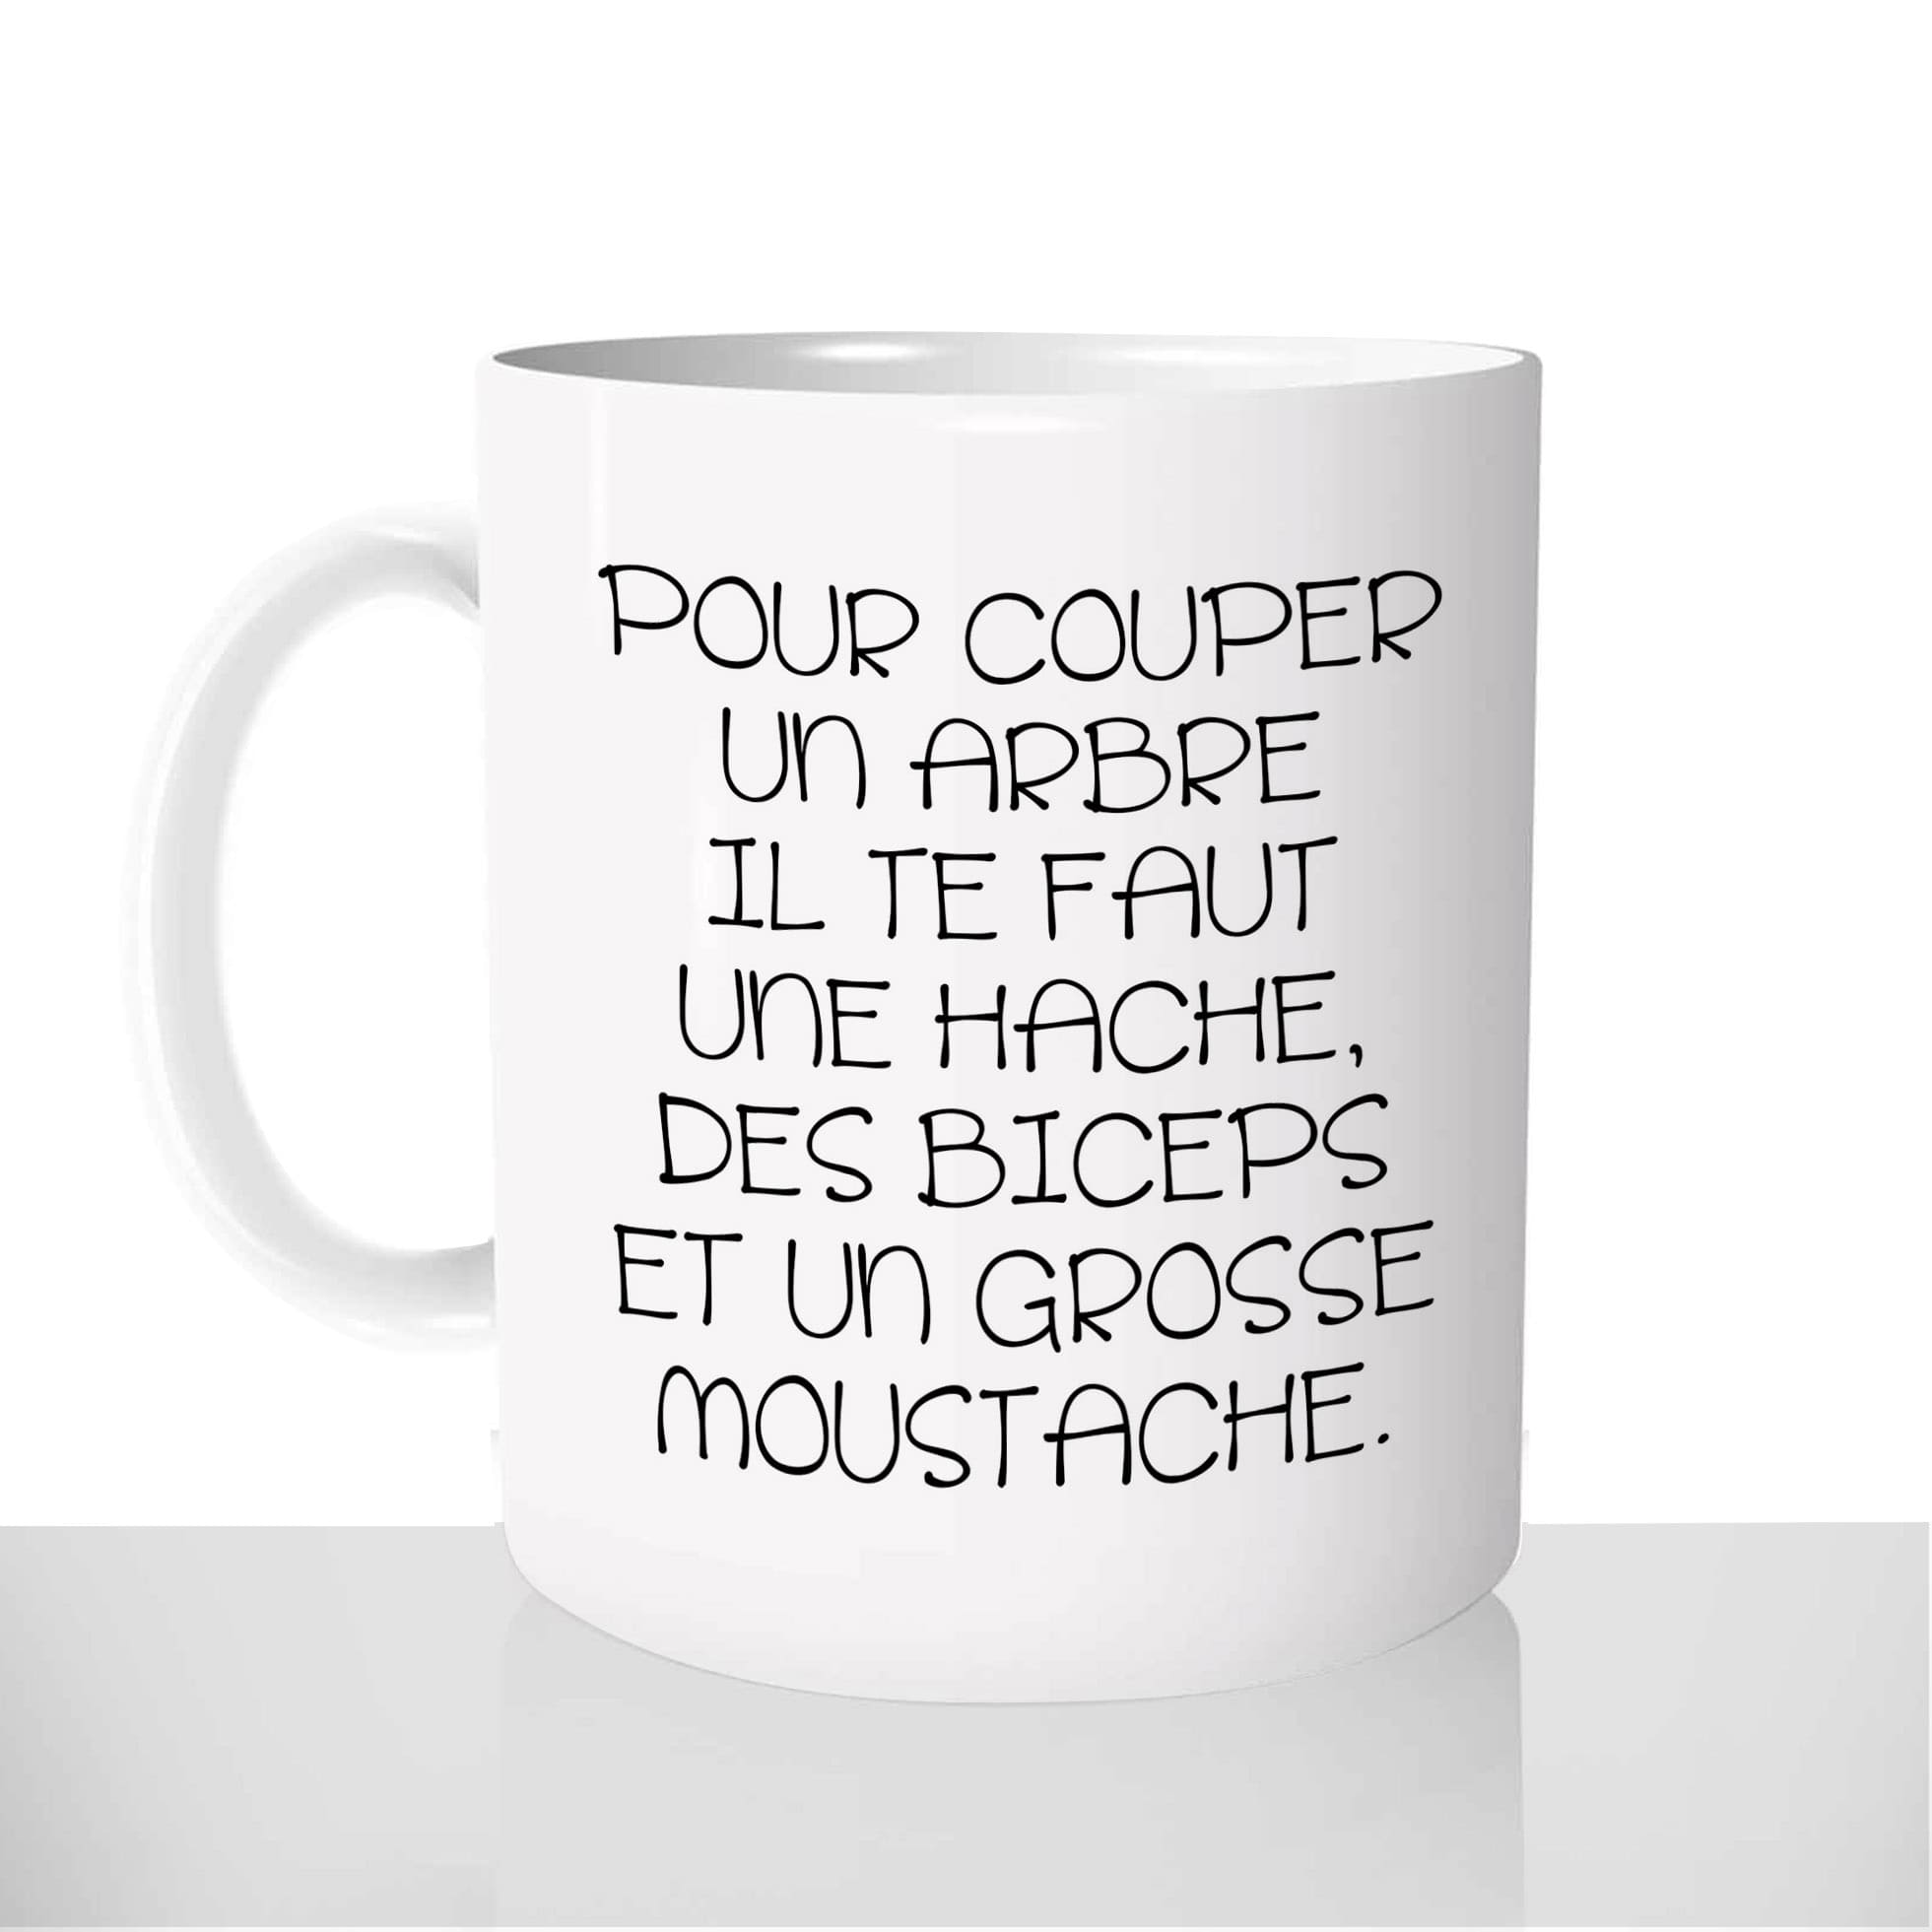 mug-blanc-céramique-11oz-france-mugs-surprise-pas-cher-biceps-grosse-moustache-coach-charisme-drole